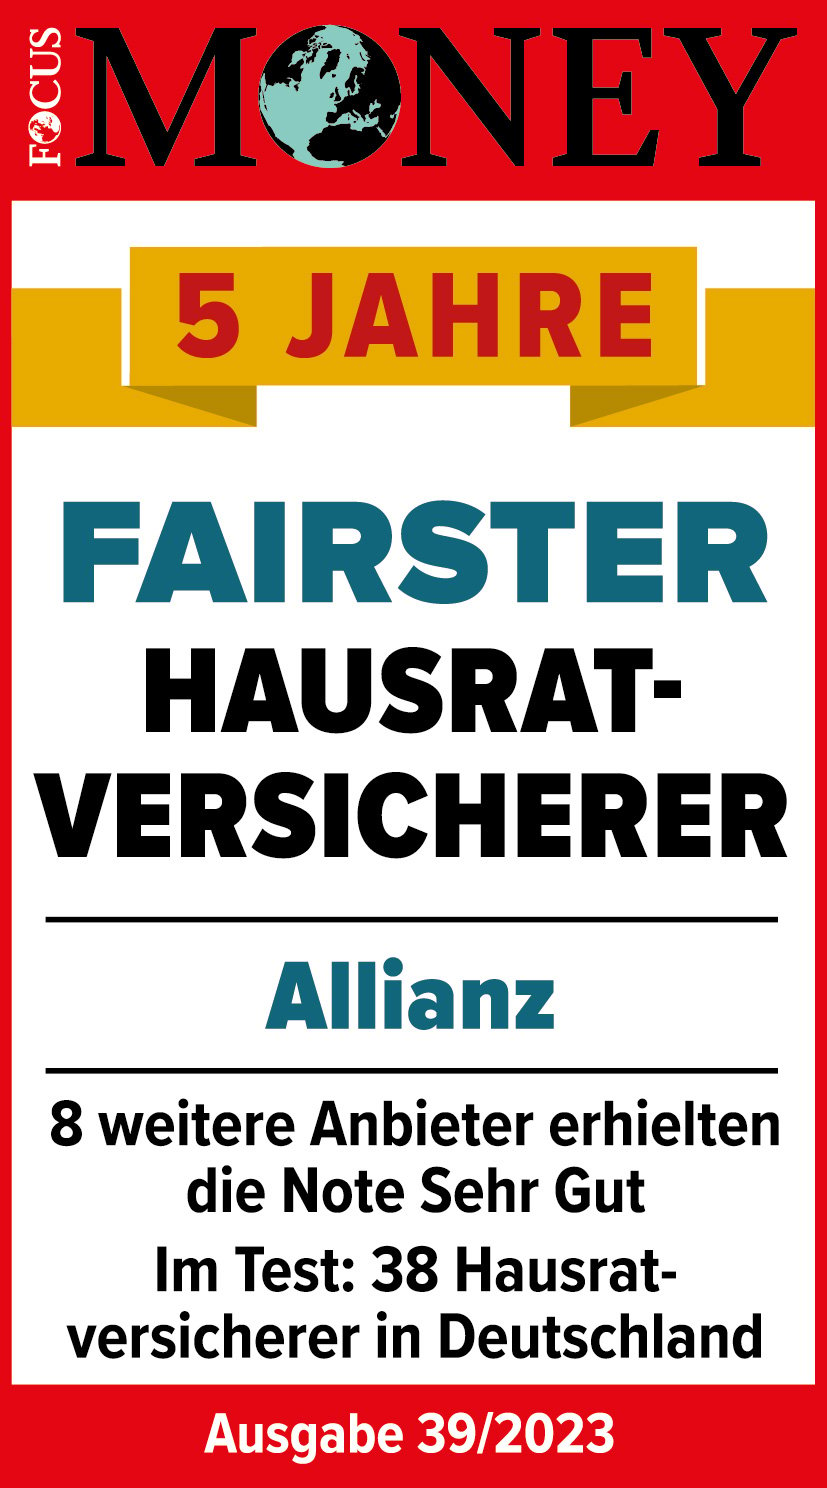 Allianz ist fünf Jahre fairster Hausratversicherer laut Testsiegel von Focus Money in der Ausgabe 39/2023. Im Test waren 38 Hausratversicherer in Deutschland, acht weitere Anbieter erhielten die Note Sehr Gut. 